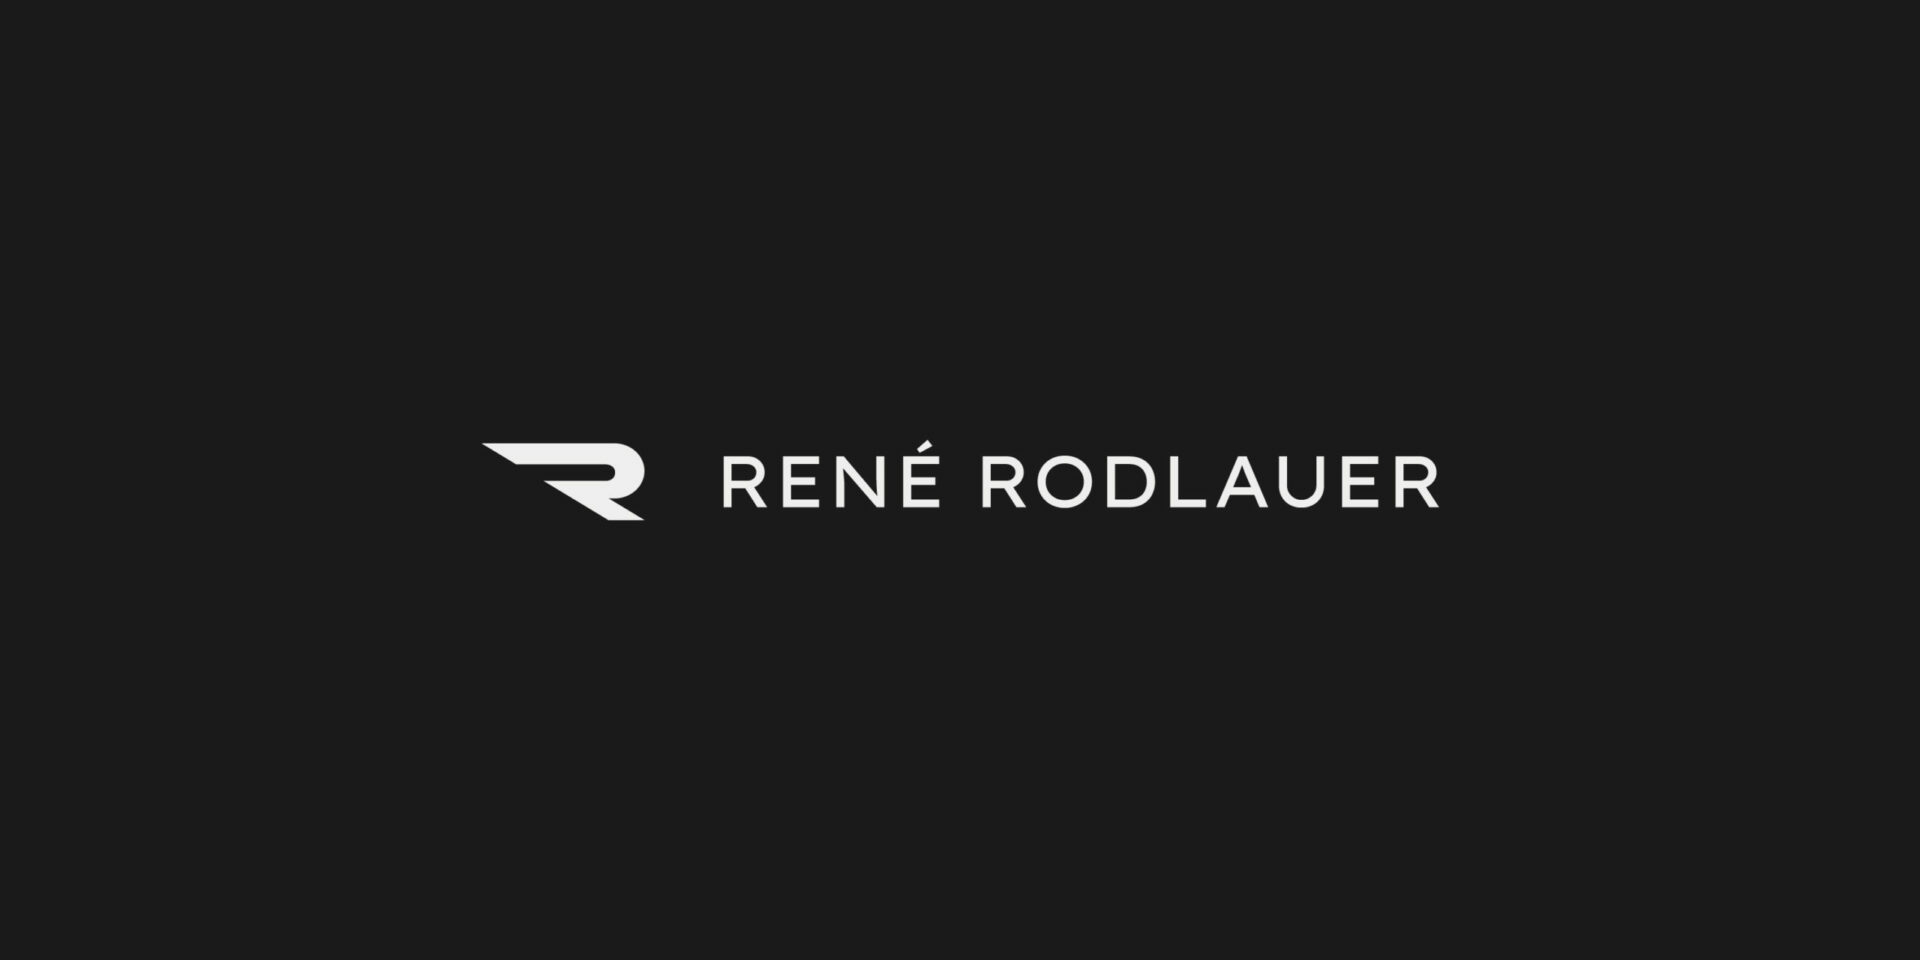 Weißes Logodesign für Director René Rodlauer auf schwarzem Hintergrund.